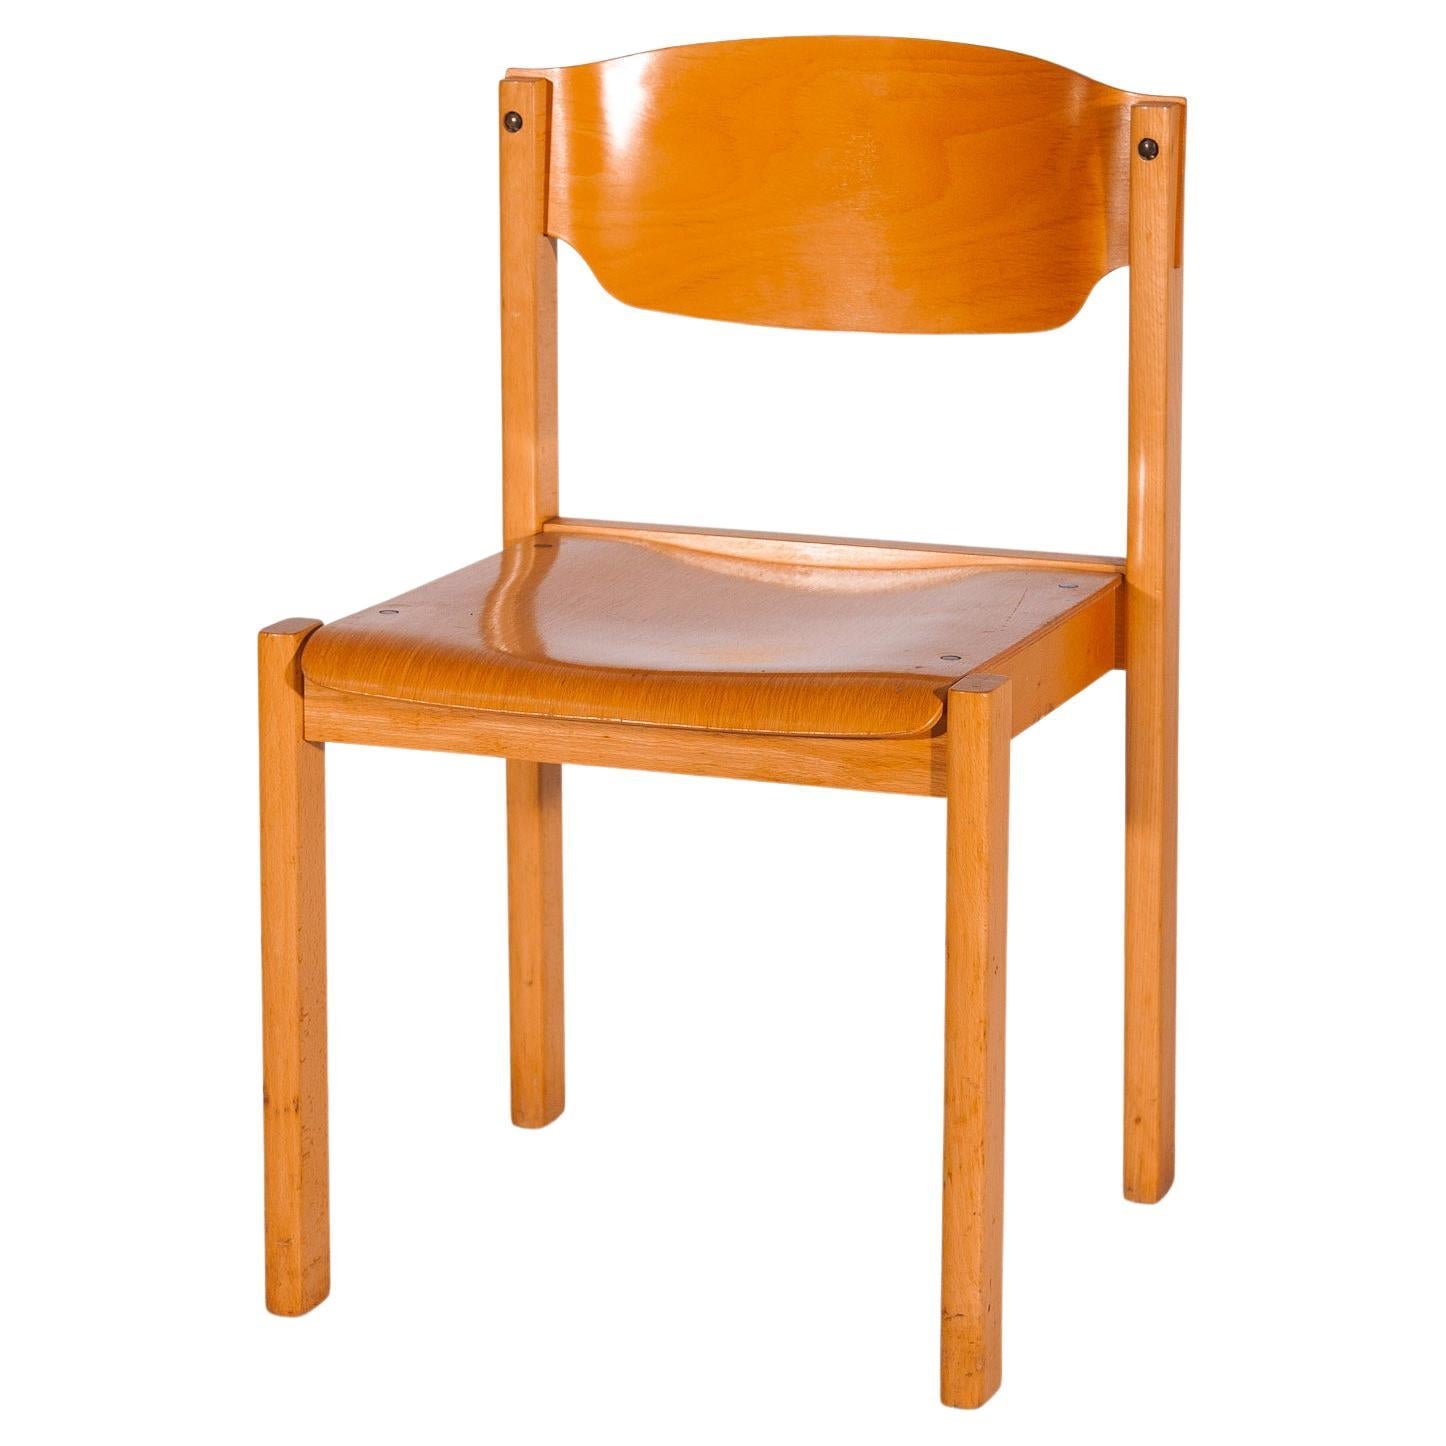 Ensemble de six chaises empilables dans le style de Roland Rainer, hêtre, années 1970, Allemagne.
Six chaises de salle à manger Mid-Century Modern fabriquées à la main en hêtre et en contreplaqué ; une icône classique et populaire du mobilier